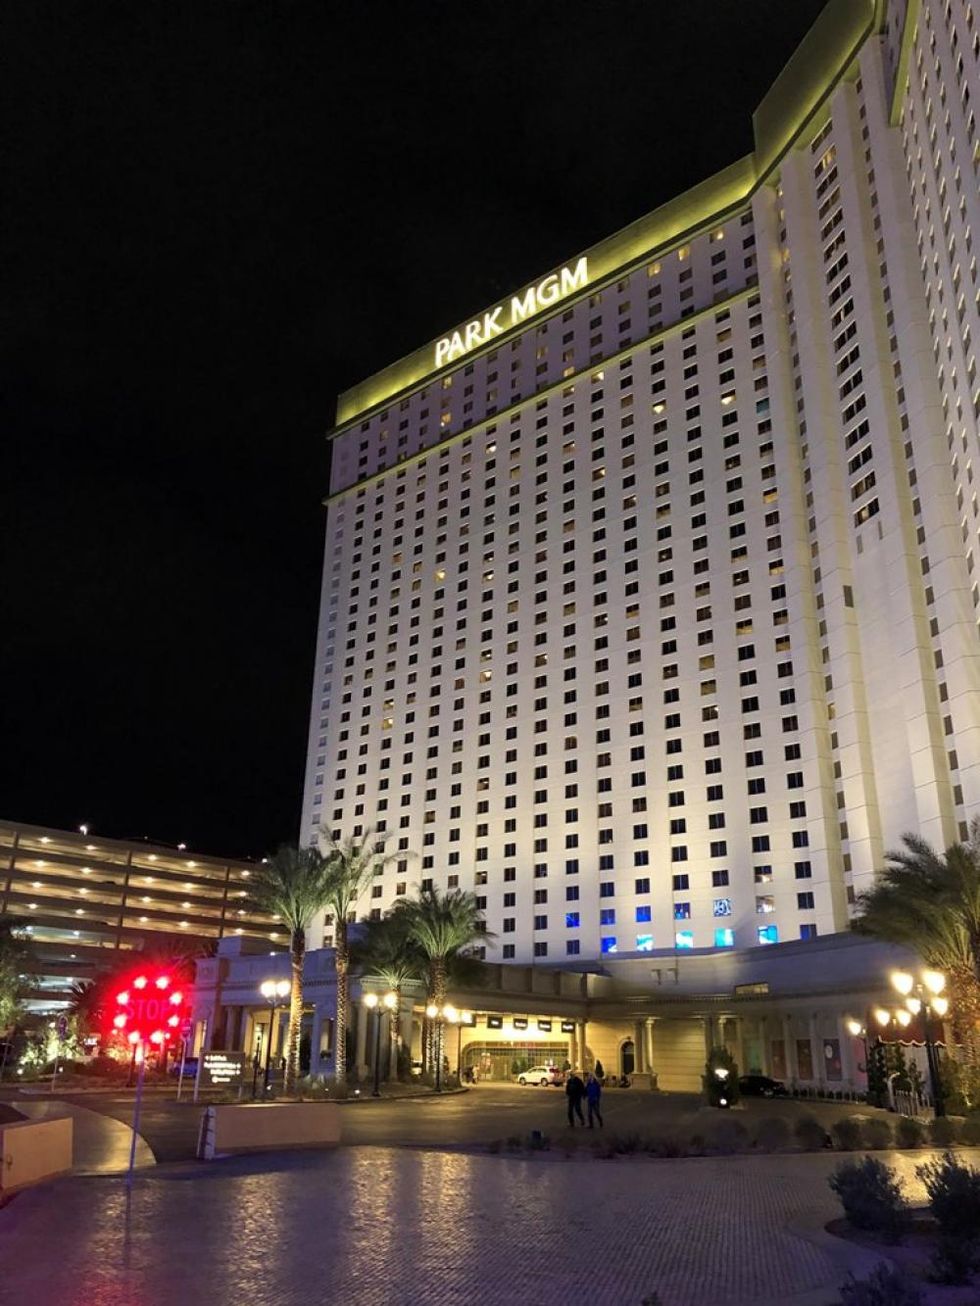 Il nostro hotel: il nuovo Park MGM (ex Monte Carlo), un albergo molto comodo con belle camere, spaziose e pulite, e dove è possibile fare il check-in comodamente anche da casa